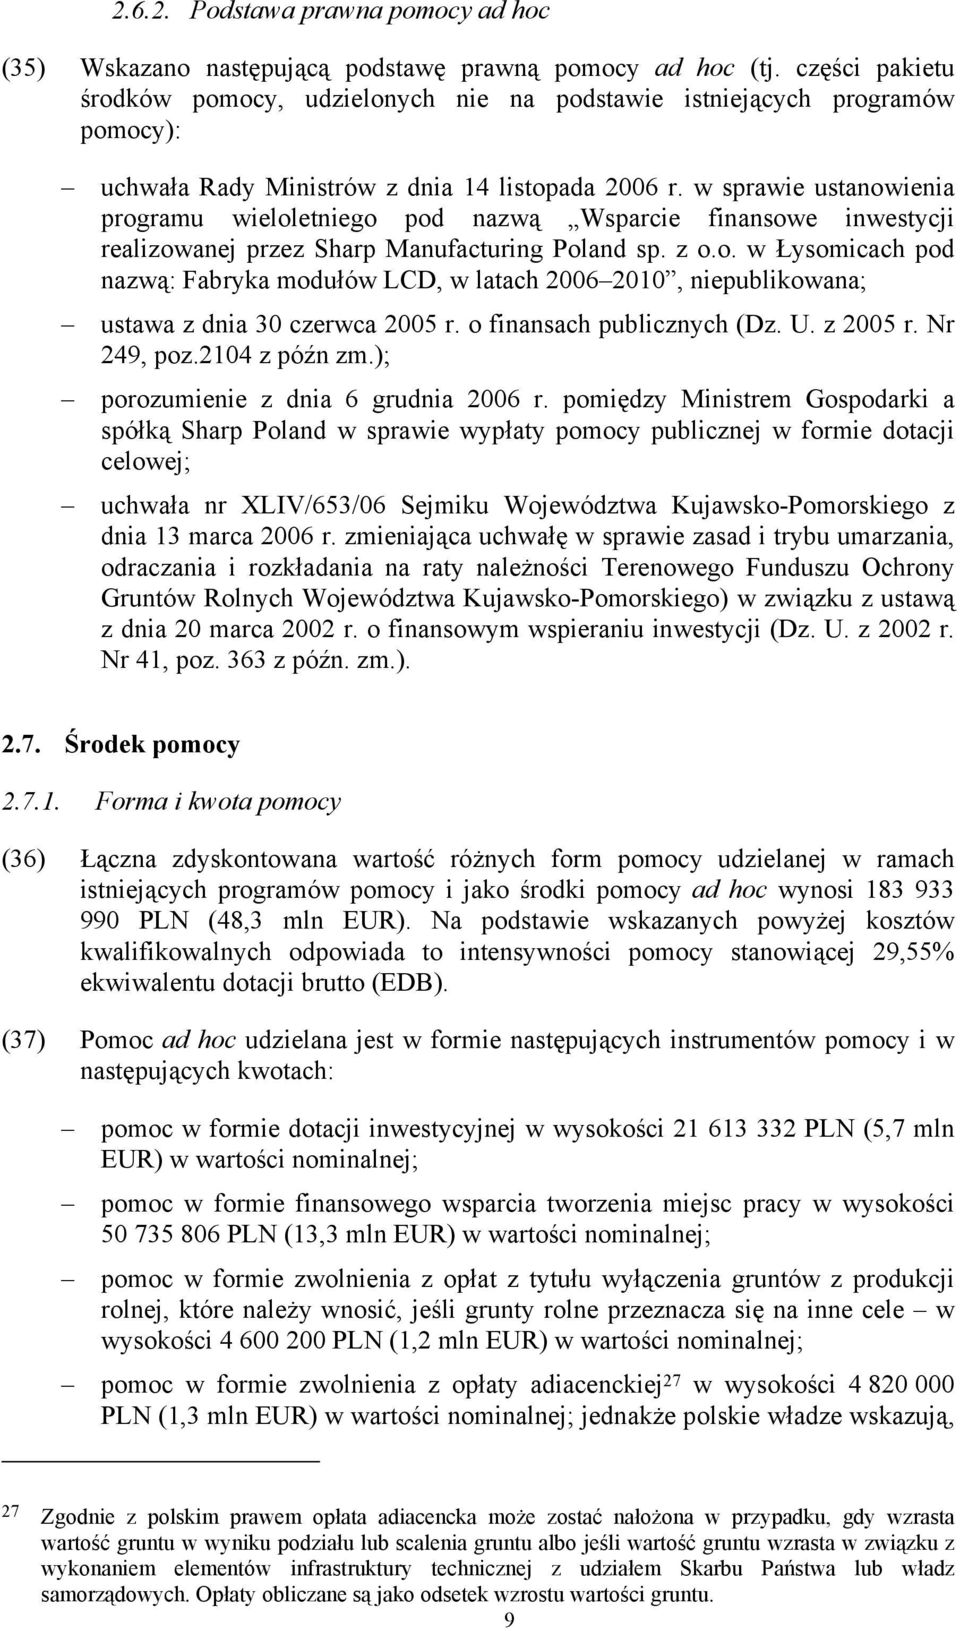 w sprawie ustanowienia programu wieloletniego pod nazwą Wsparcie finansowe inwestycji realizowanej przez Sharp Manufacturing Poland sp. z o.o. w Łysomicach pod nazwą: Fabryka modułów LCD, w latach 2006 2010, niepublikowana; ustawa z dnia 30 czerwca 2005 r.